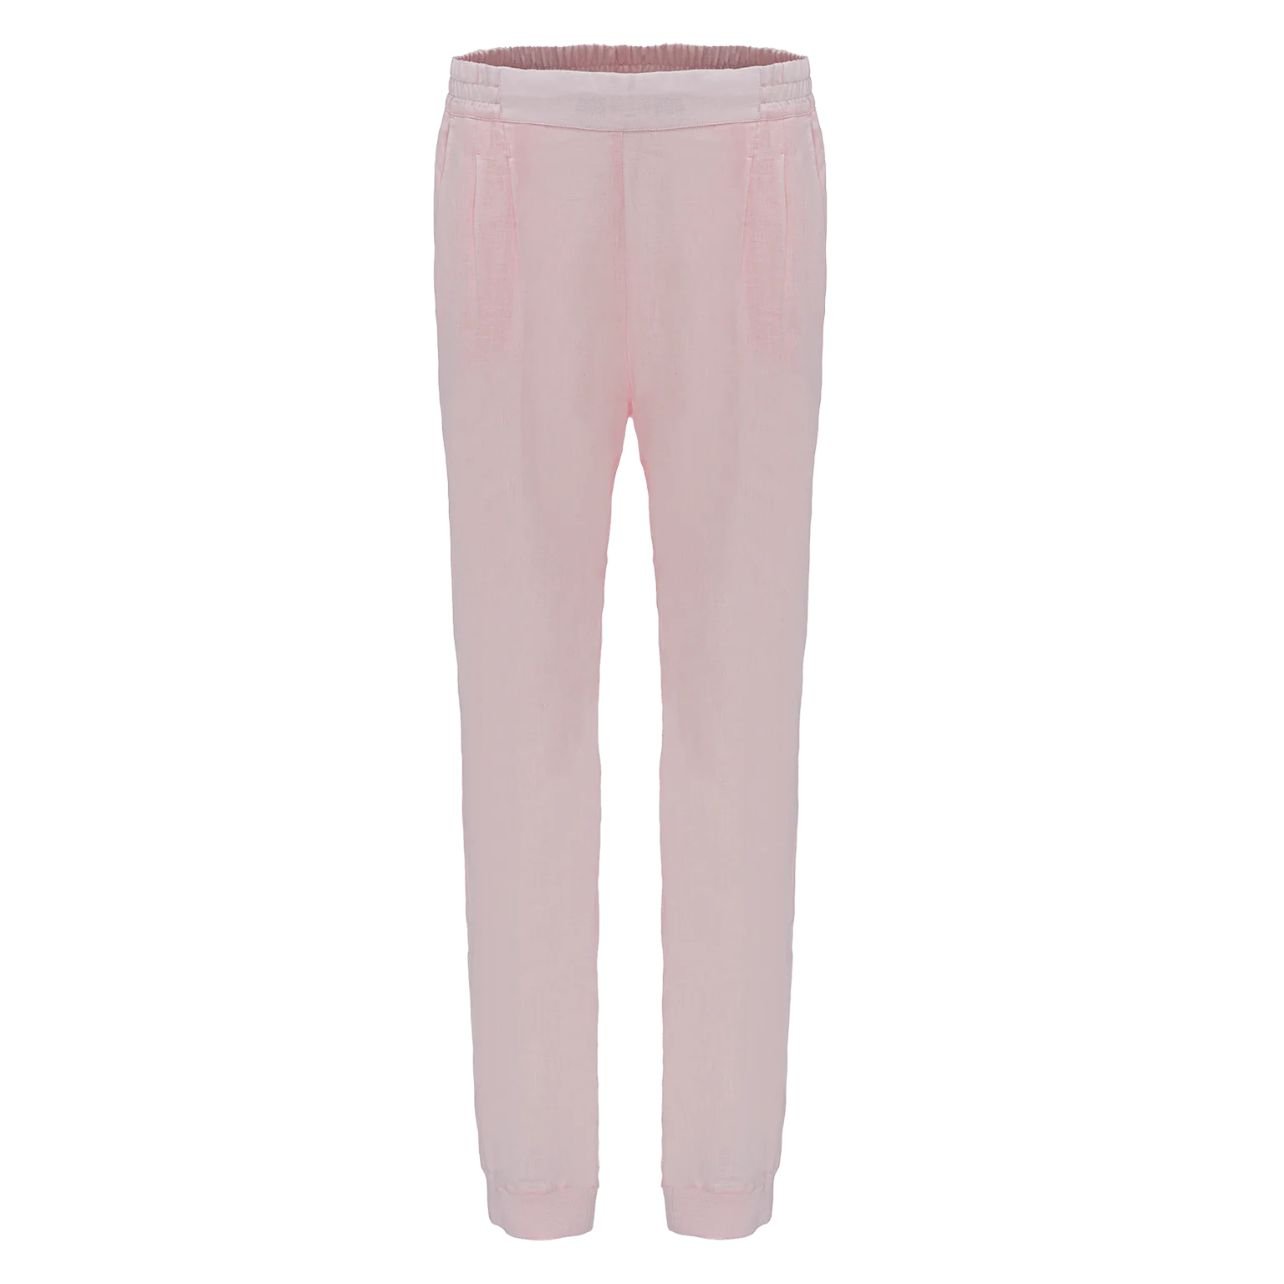 100% Capri Linen Pants in Pink